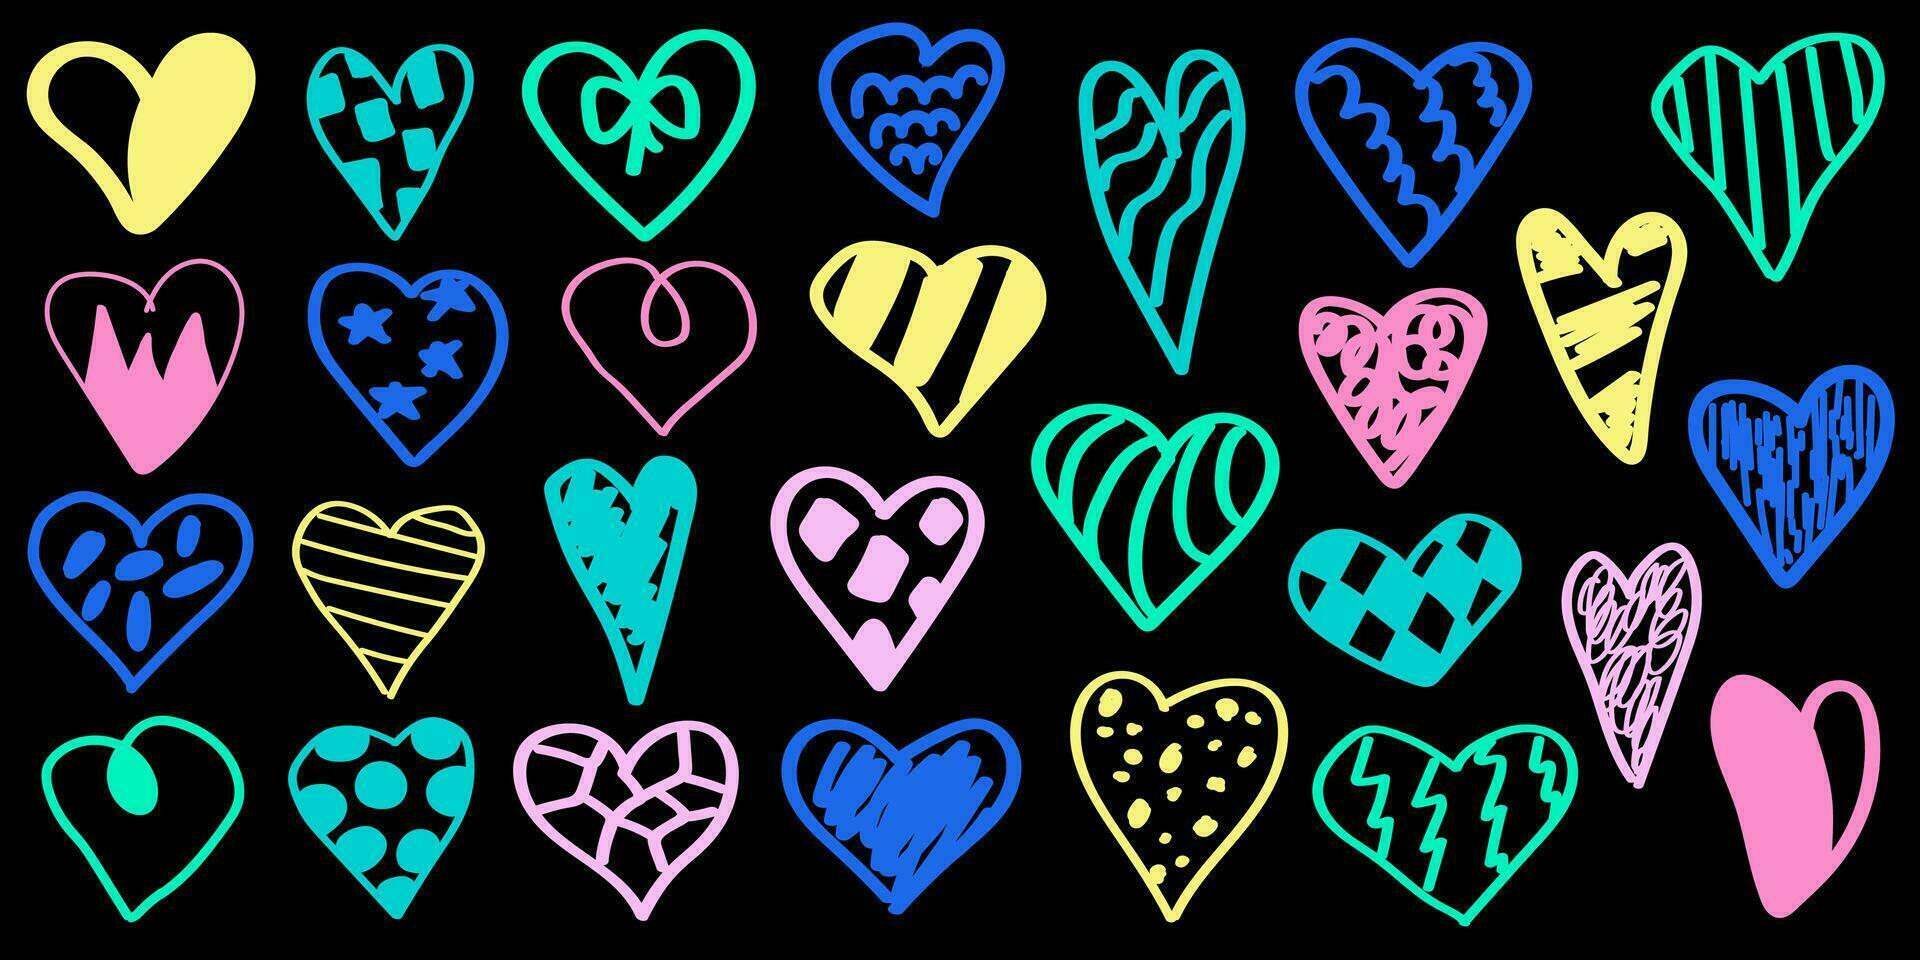 corações grafite. vetor ilustração. conjunto do multicolorido silhuetas do corações com diferente padrões. mão desenhado rabisco estilo.